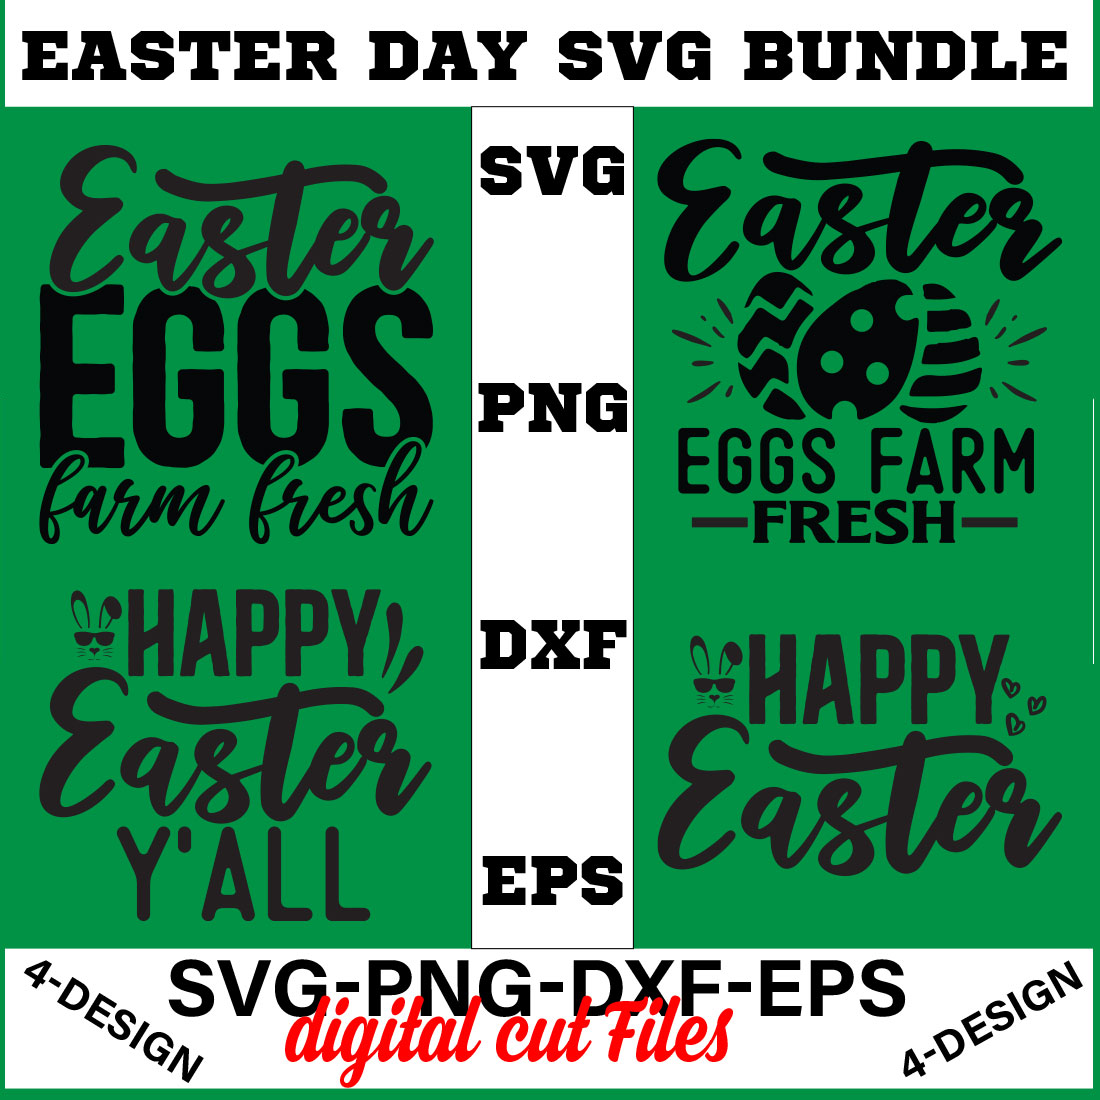 Happy Easter SVG Bundle, Easter SVG, Easter quotes, Easter Bunny svg, Easter Egg svg, Volume-07 cover image.